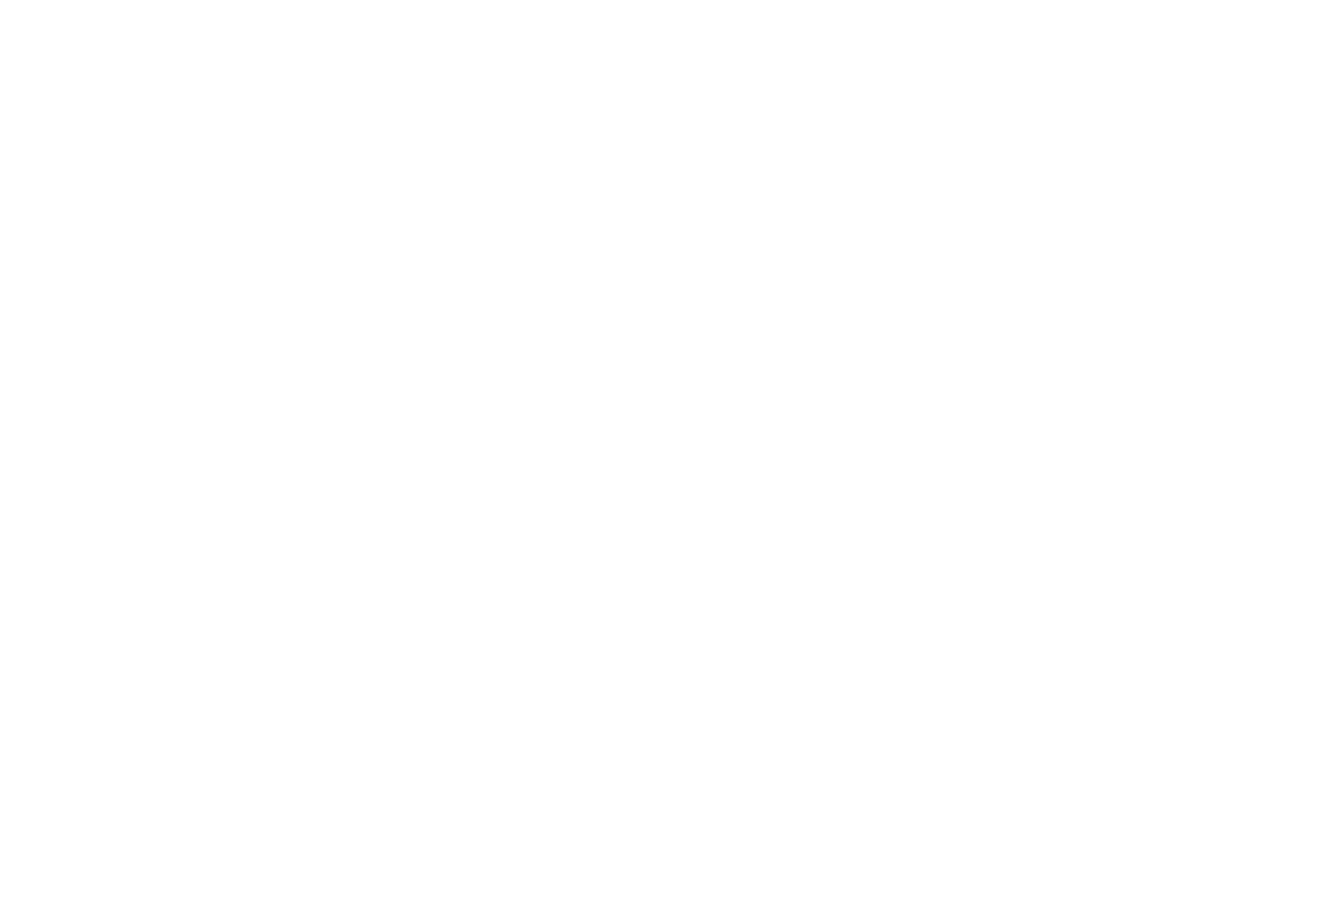 ZeroDay